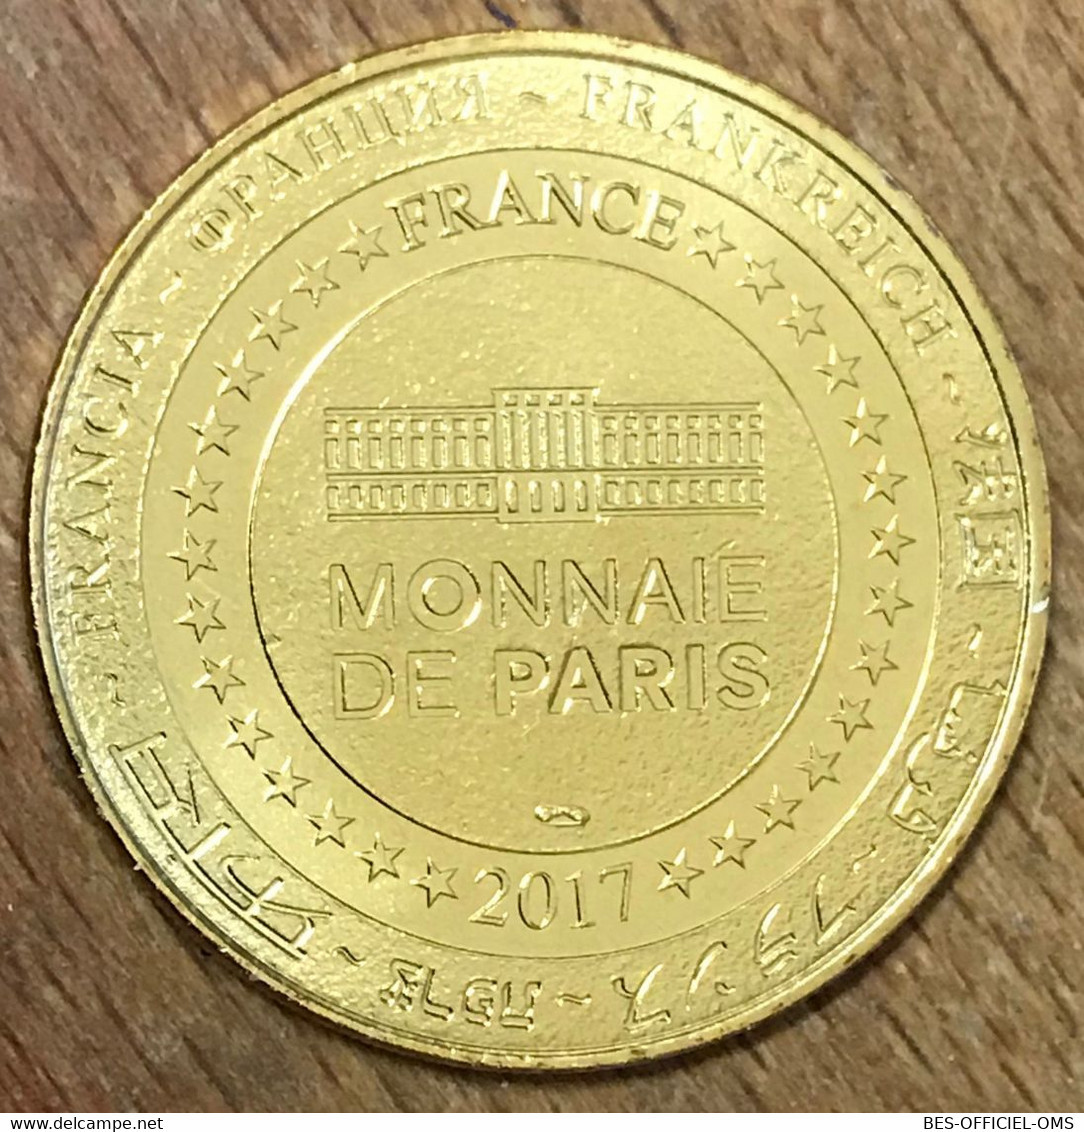 77 STAR WARS DISNEYLAND PARIS STAR TOURS DISNEY MDP 2017 MÉDAILLE MONNAIE DE PARIS JETON TOURISTIQUE TOKENS MEDALS COINS - 2017